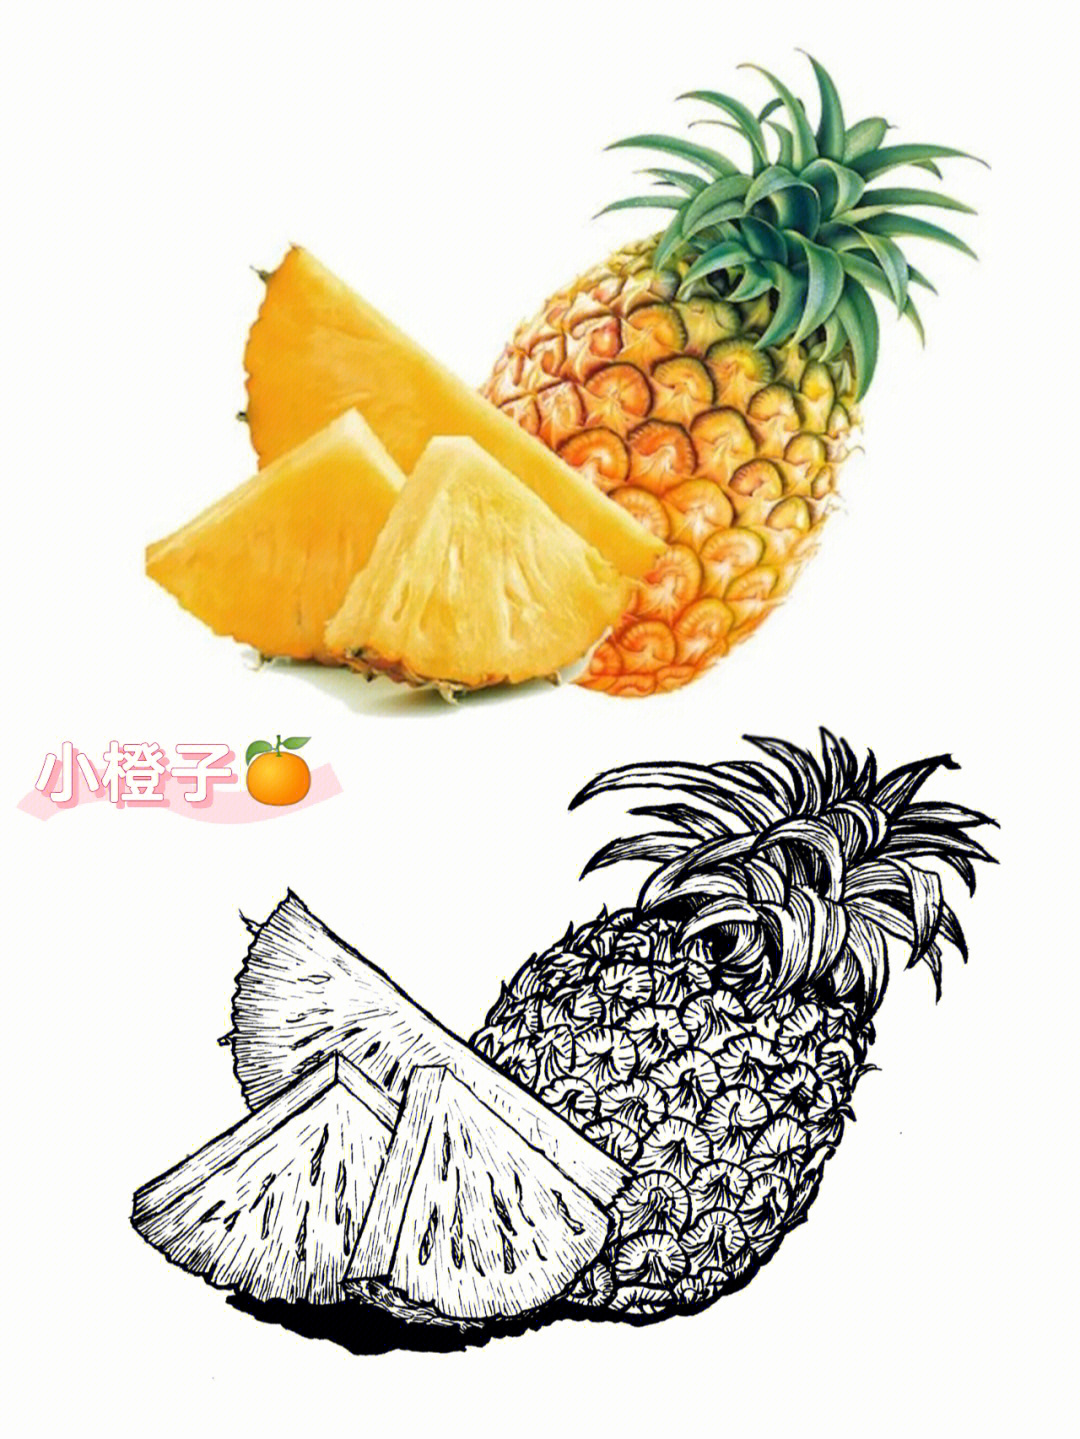 线描画水果组合图片